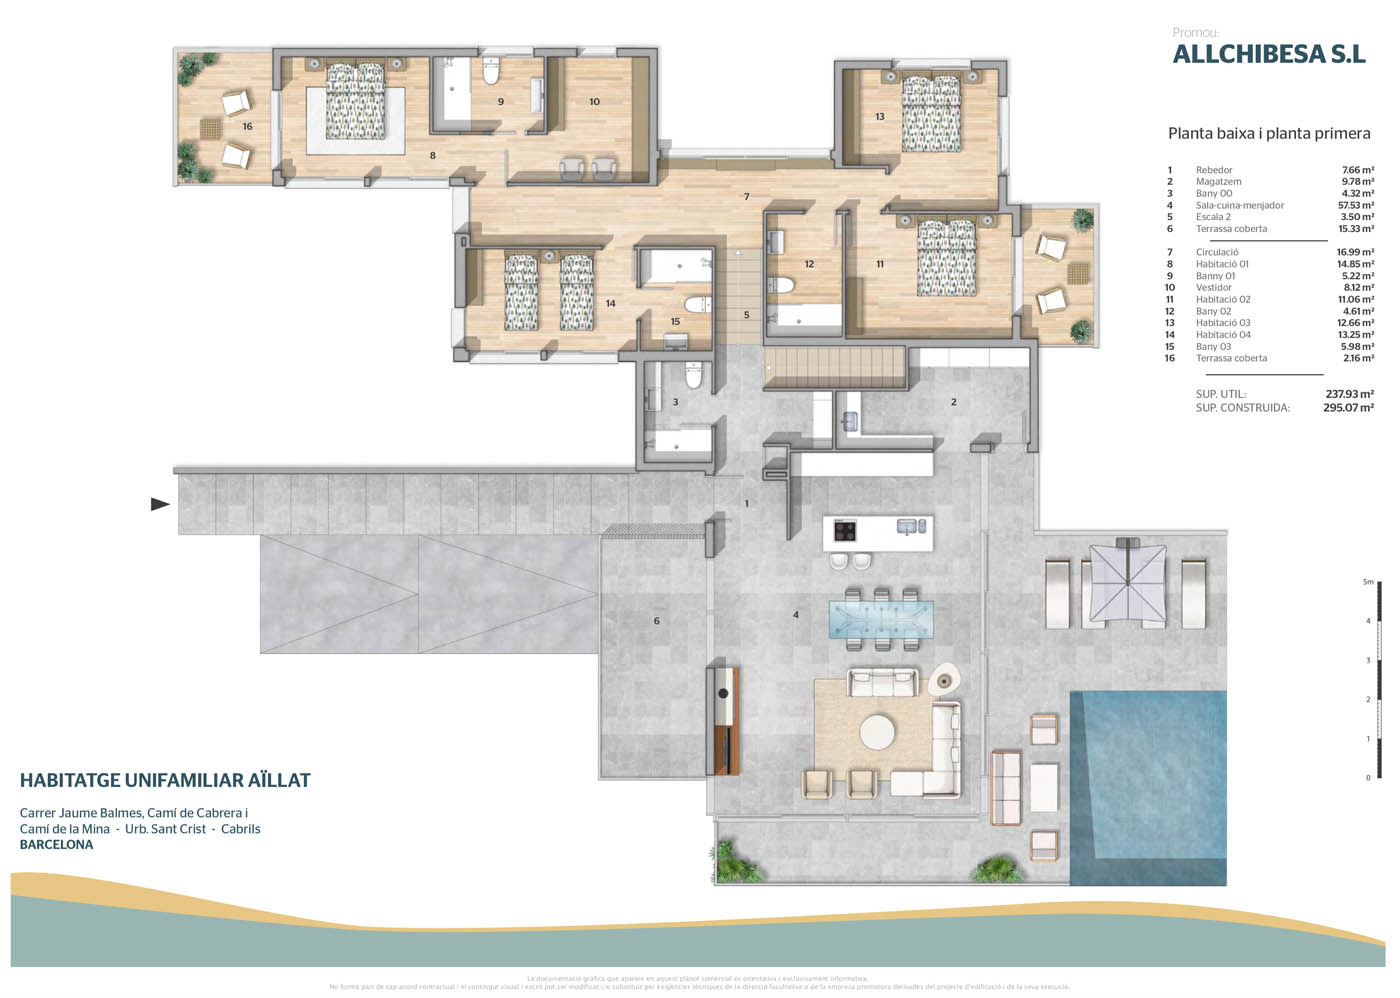 Planos comerciales 2D a color de una vivienda unifamiliar con parcela independiente en Cabrils, Barcelona